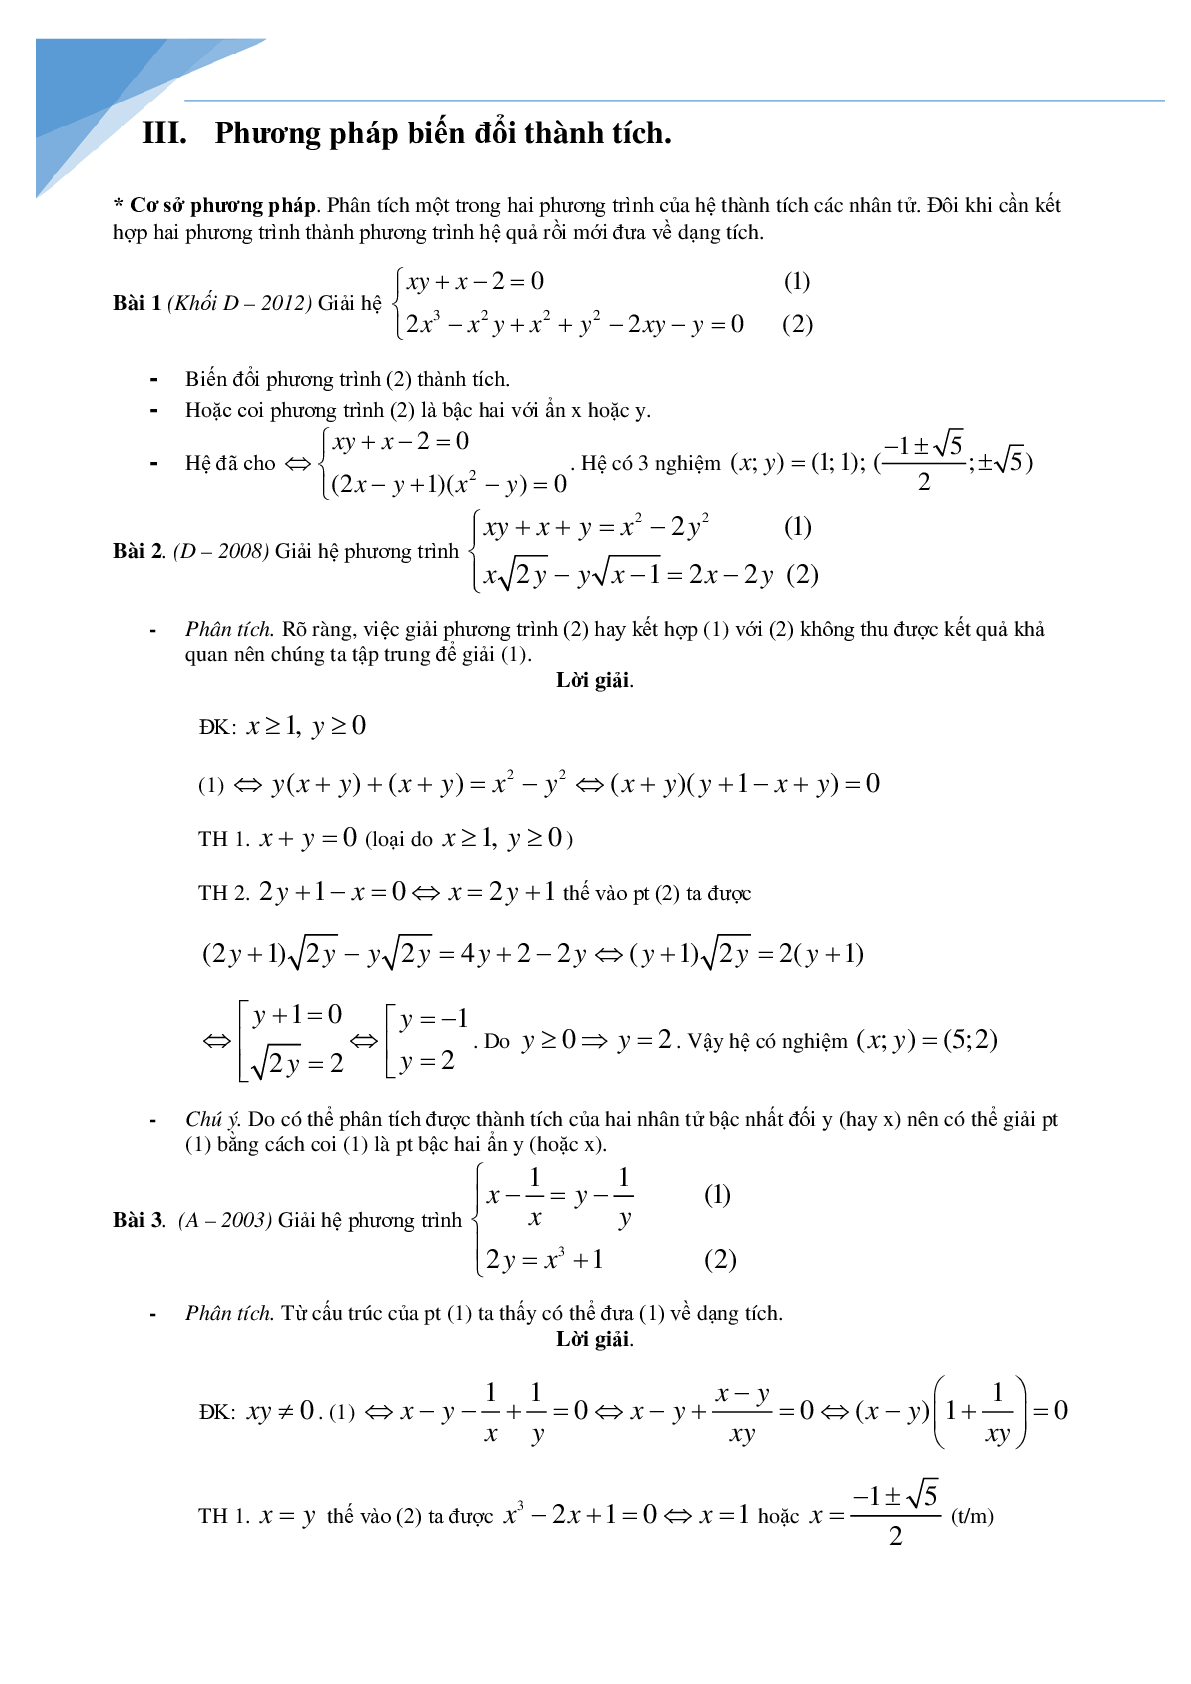 Chuyên đề hệ phương trình bồi dưỡng học sinh giỏi toán (trang 10)